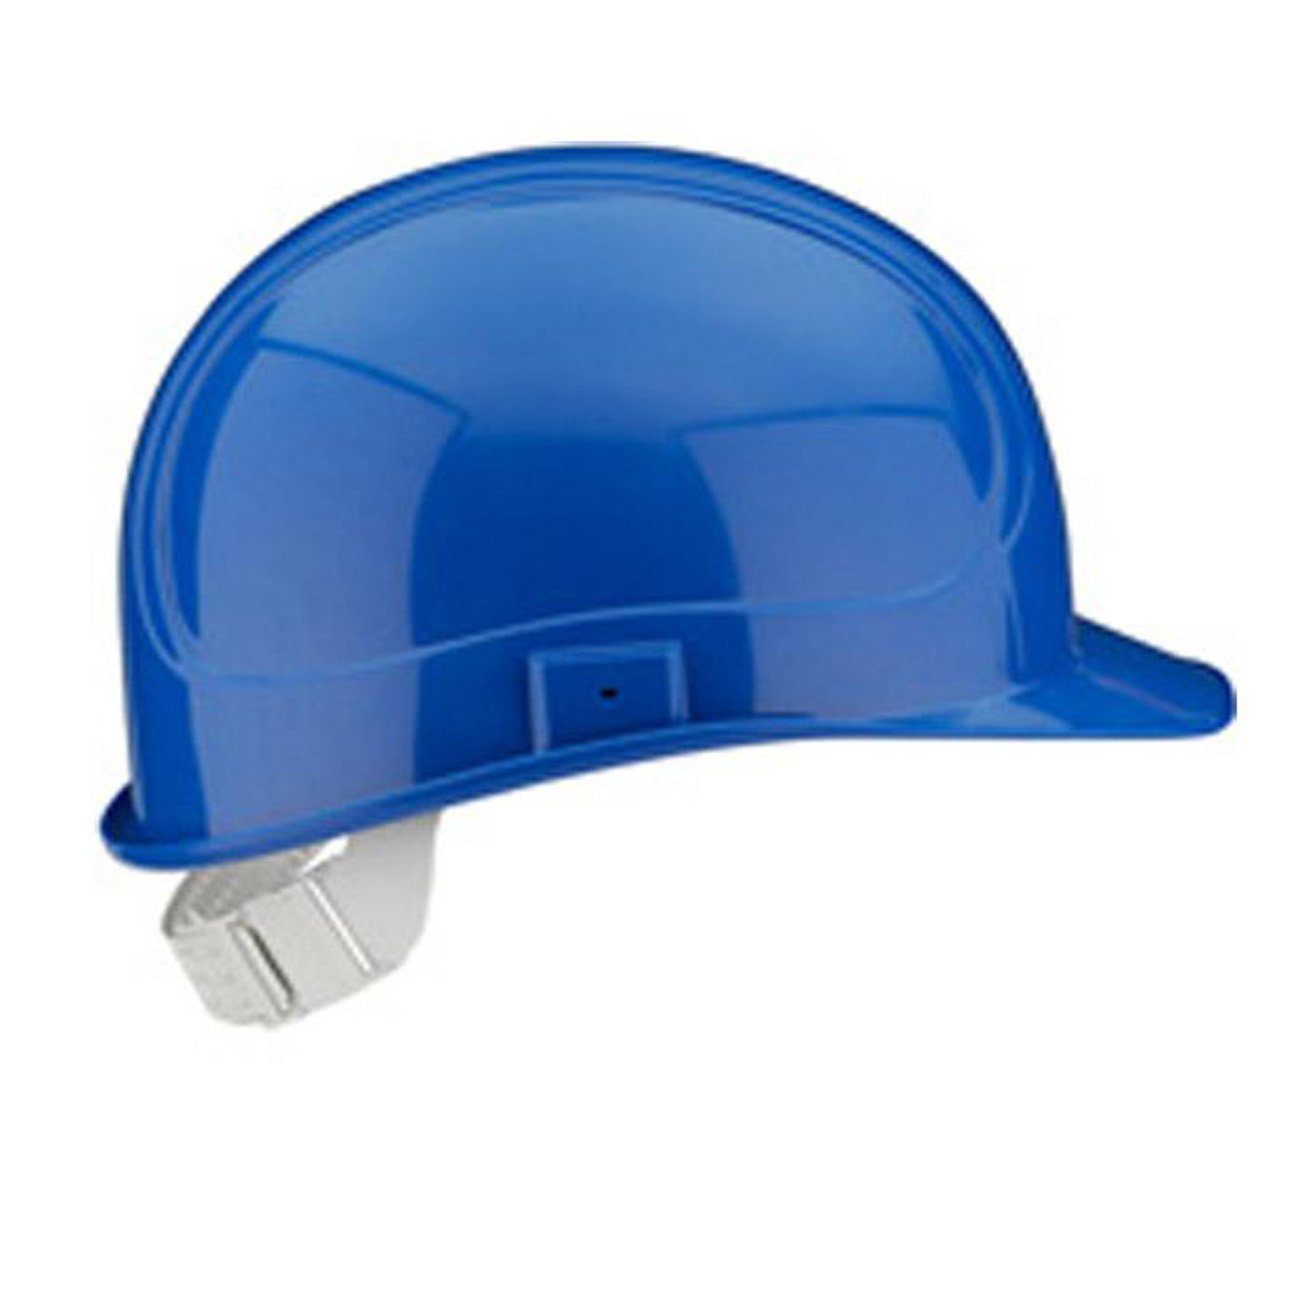 myMAW Kopfschutz Schutzhelm Elektriker Helm Gelb, Rot, Blau Karn…